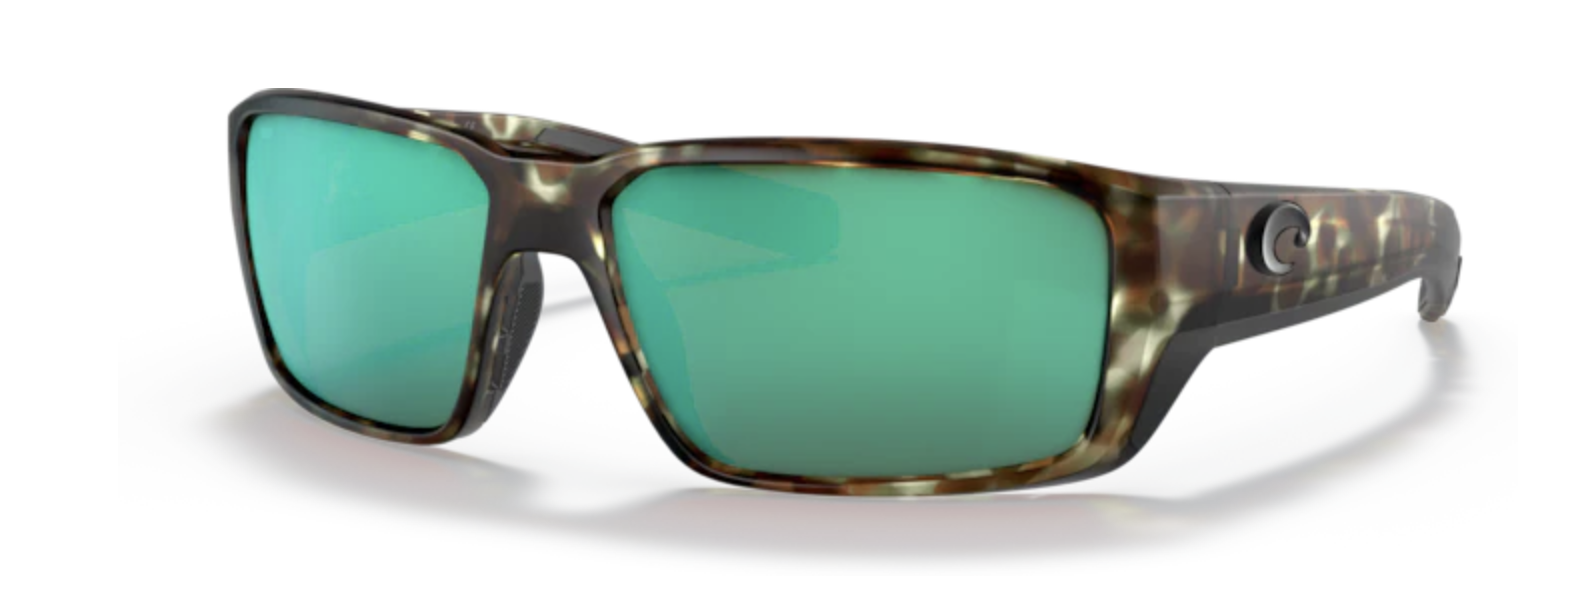 Costa Del Mar Costa Fantail Pro Sunglasses Matte Wetlands w/Green Mirror 580G